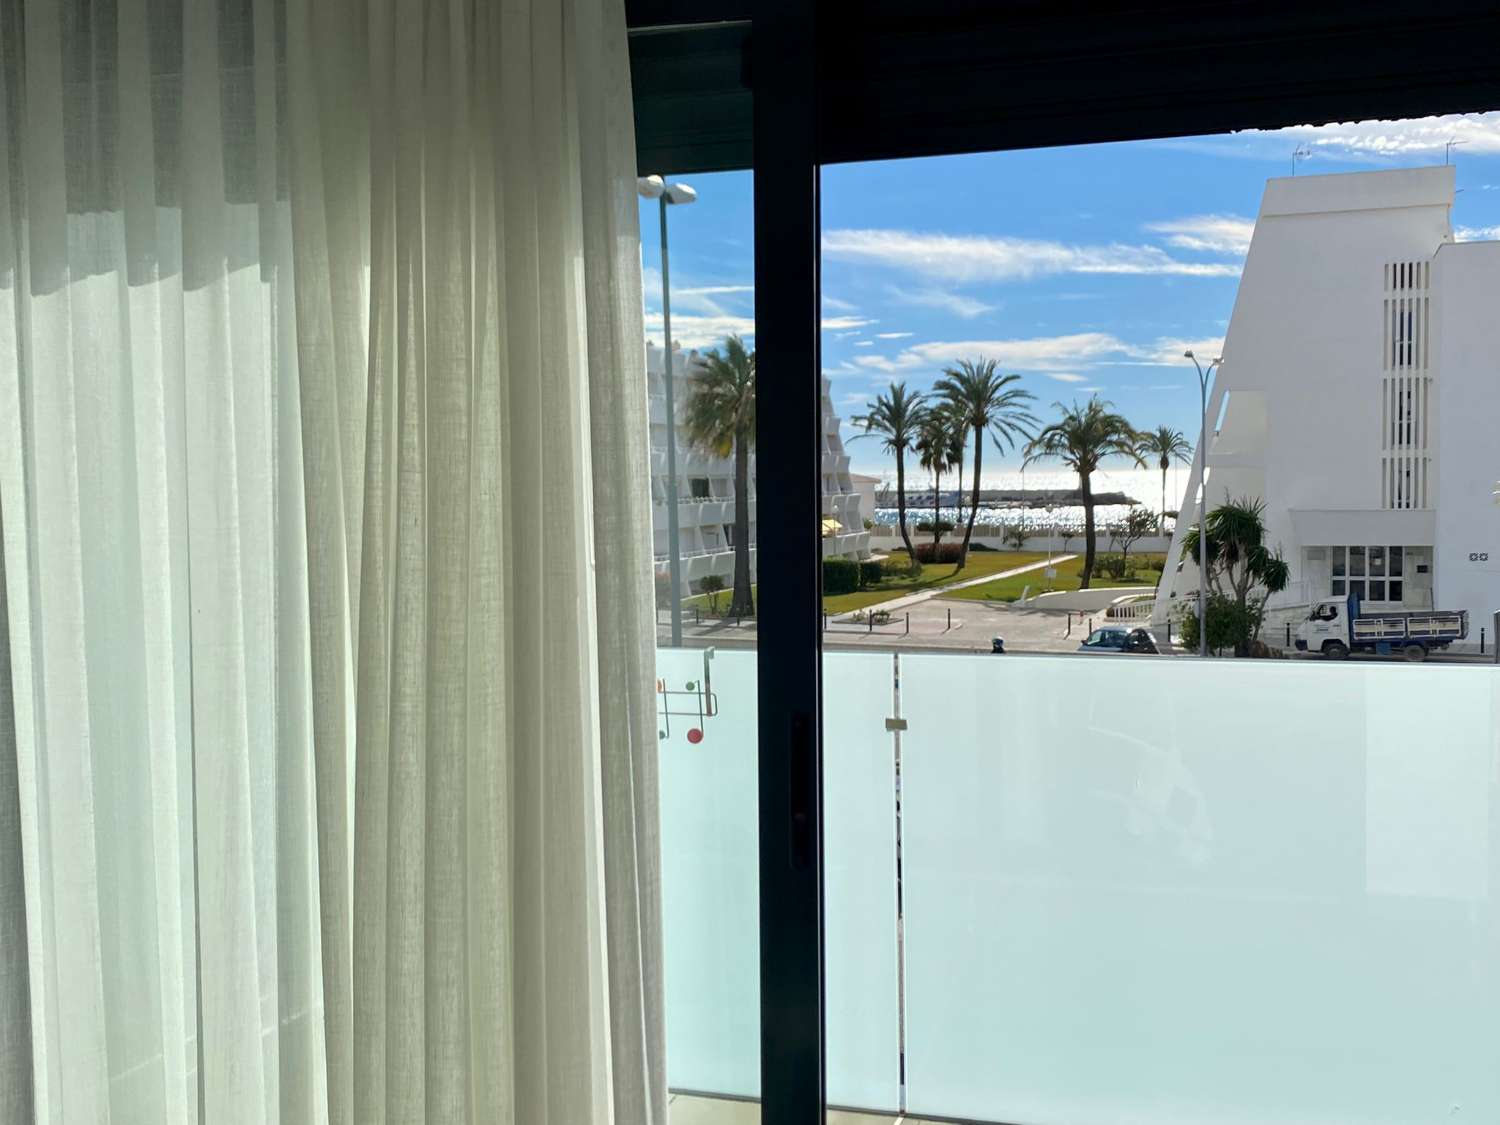 Lägenhet med två sovrum, med terrass och gemensam pool intill stranden i Puerto de la Caleta, tillgänglig för vintern